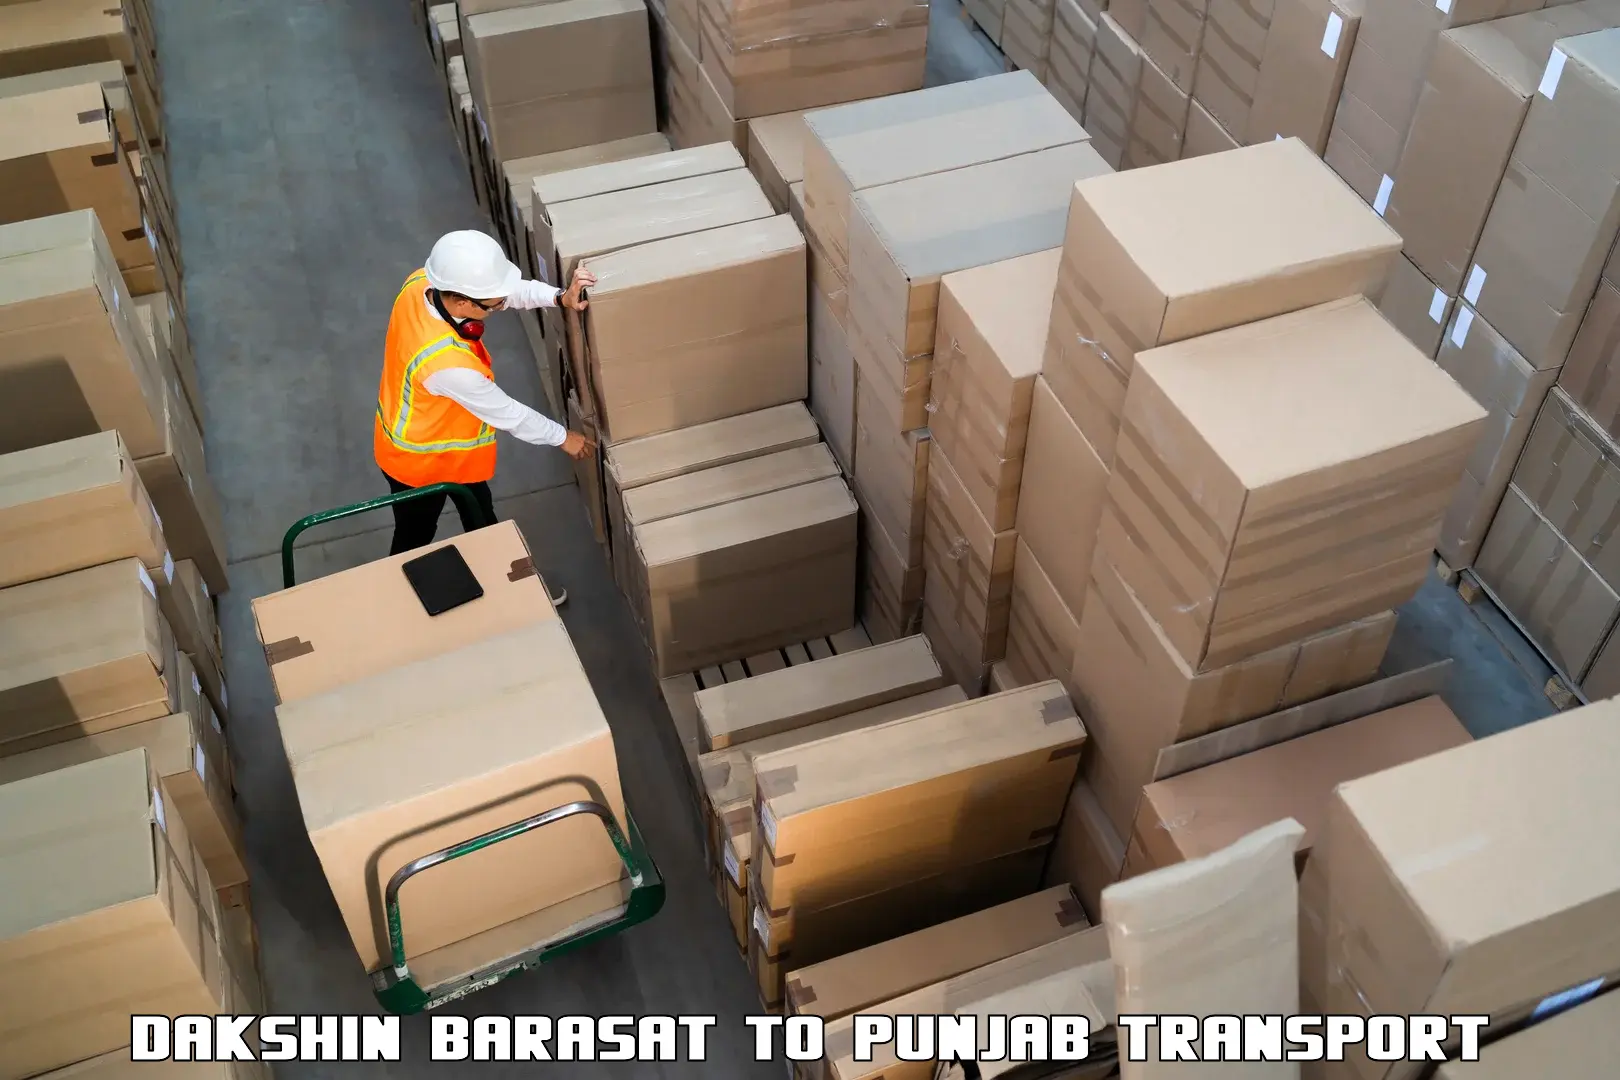 Cargo transport services Dakshin Barasat to Giddarbaha